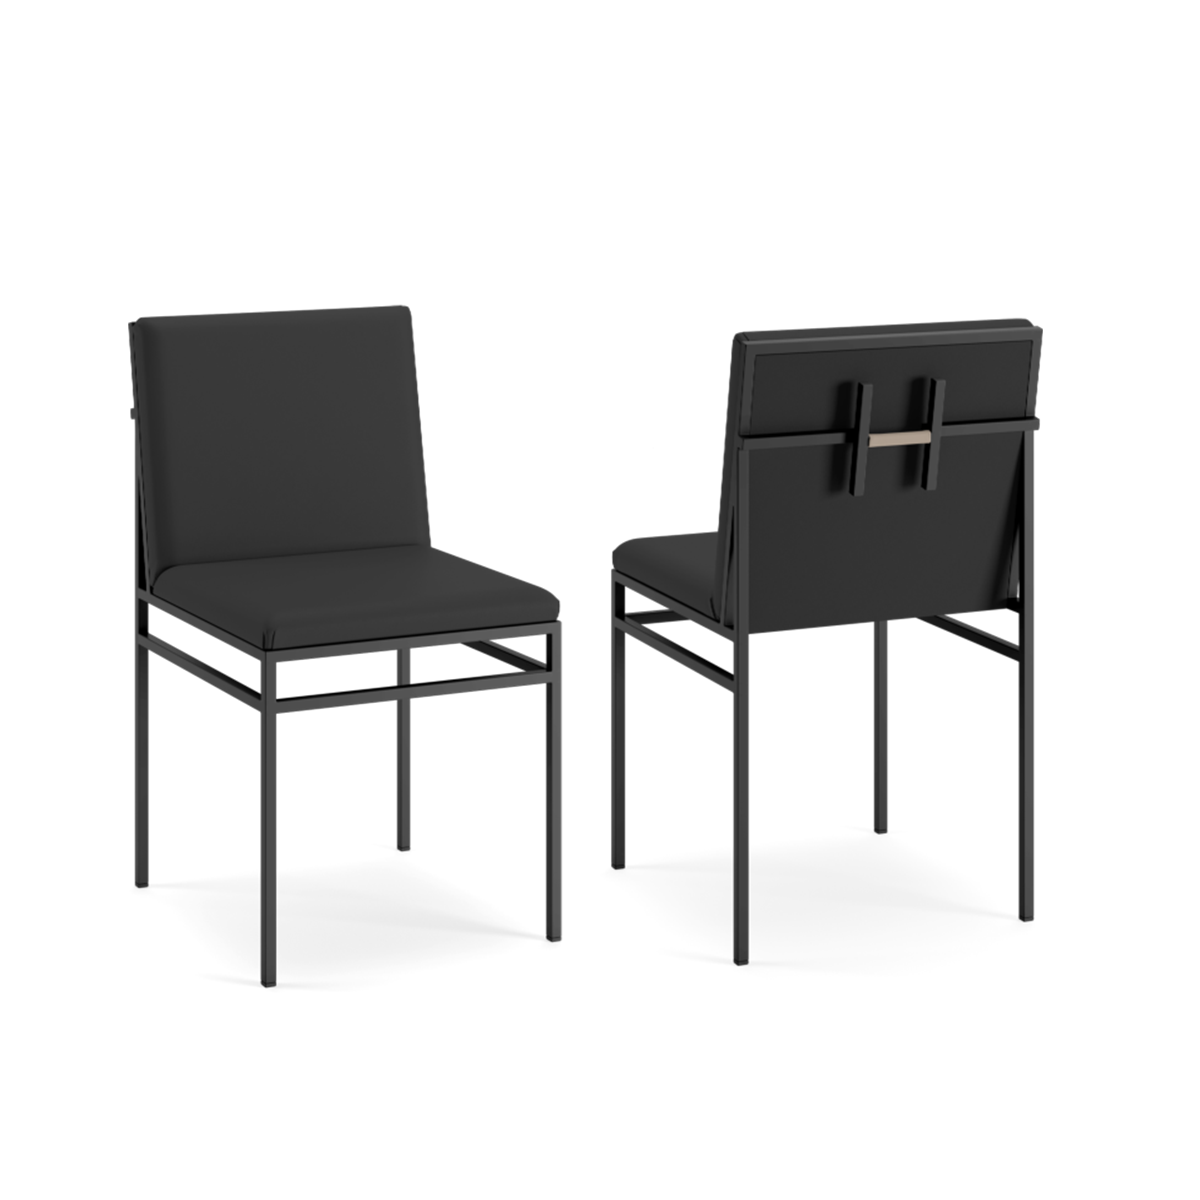 Efva Attling - H Chair